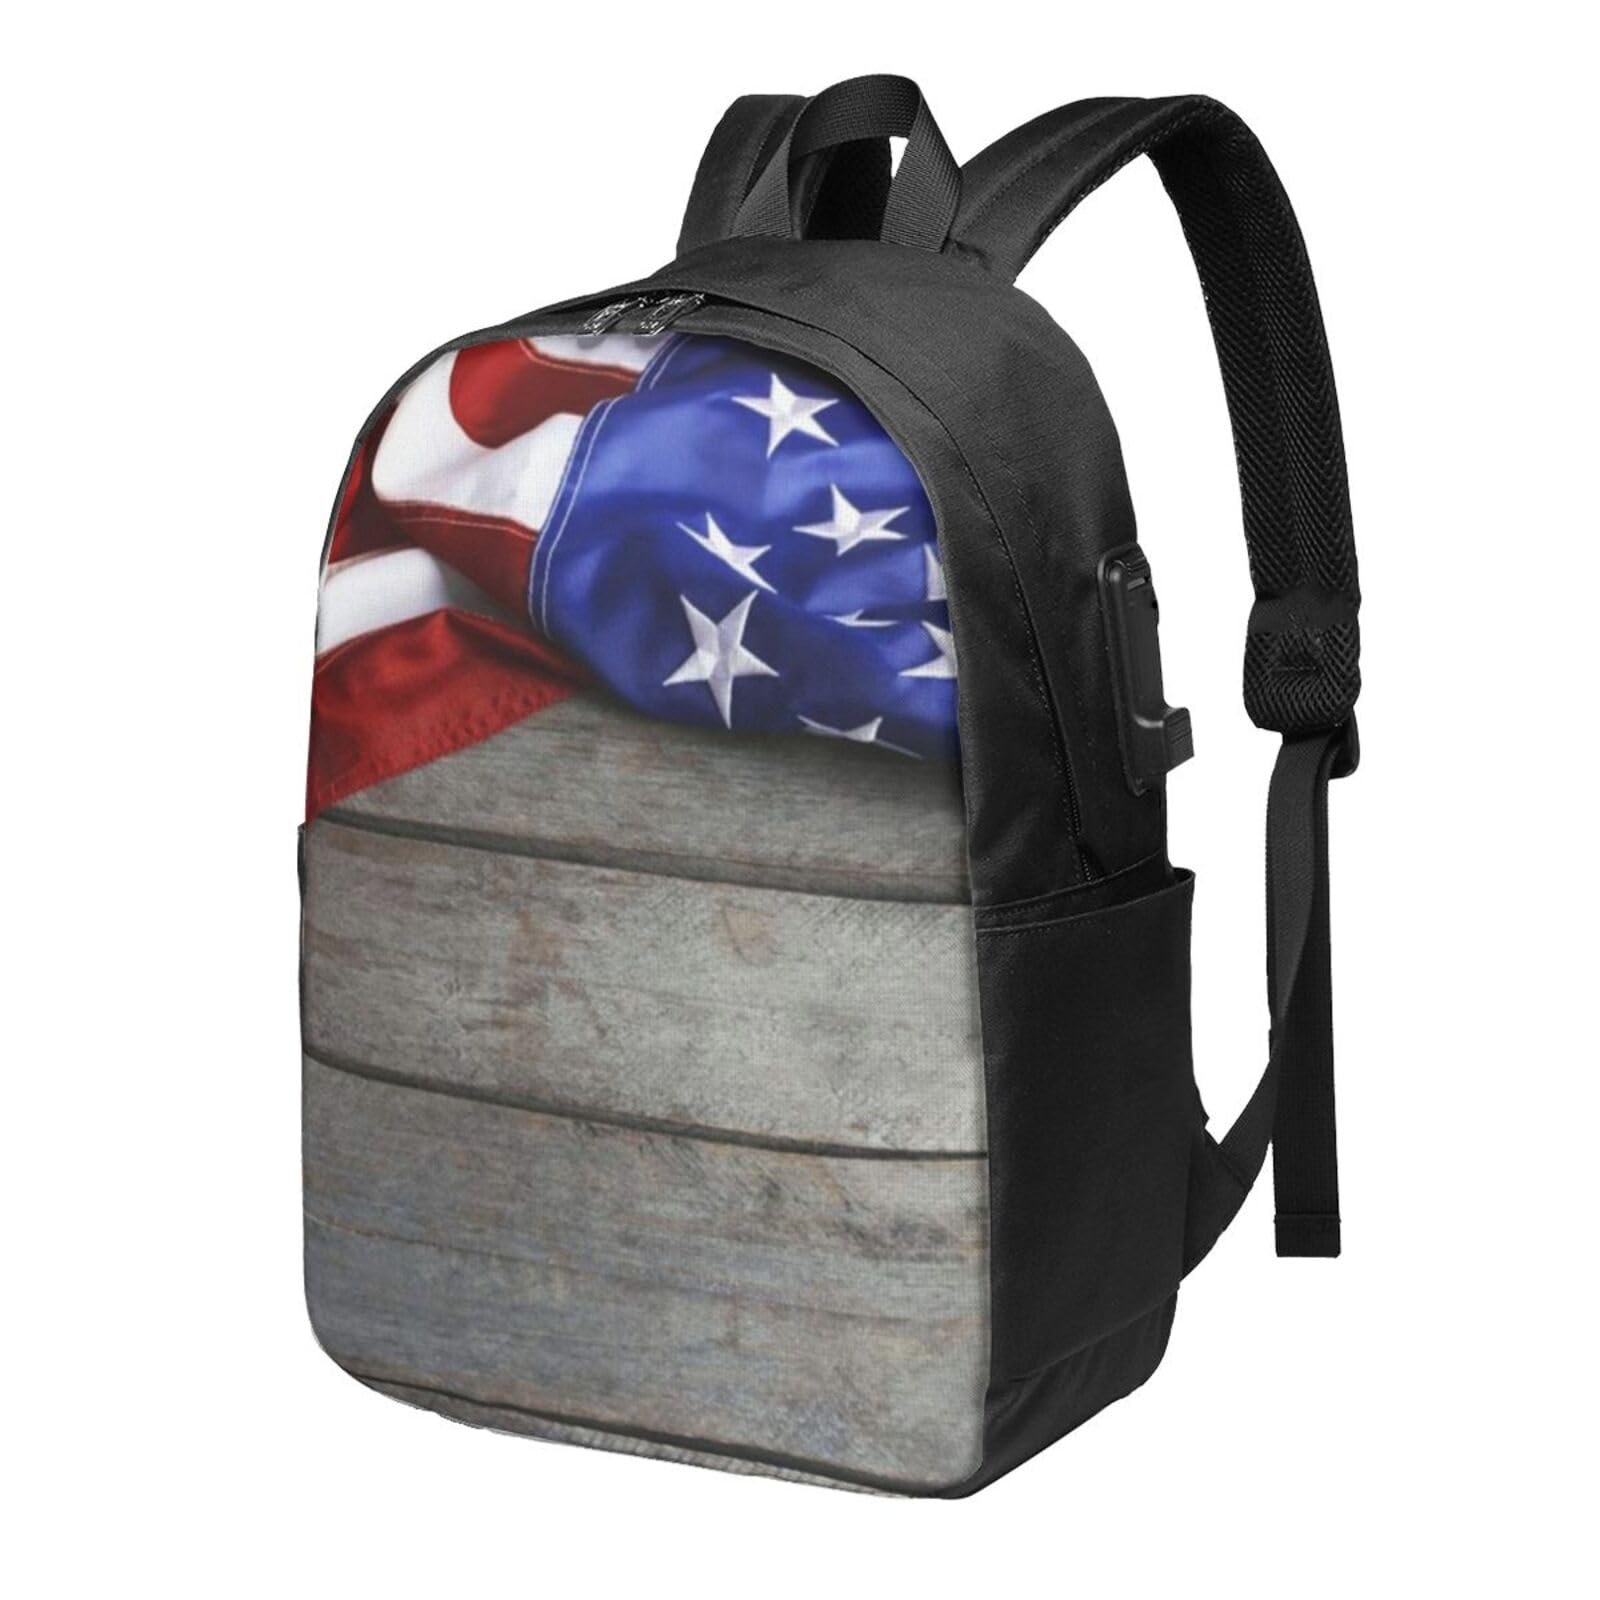 送料無料OUSIKA American Flags Laptop Backpack With Usb Charging Port Water Resistant Casual Daypacks Travel Bag For Men W